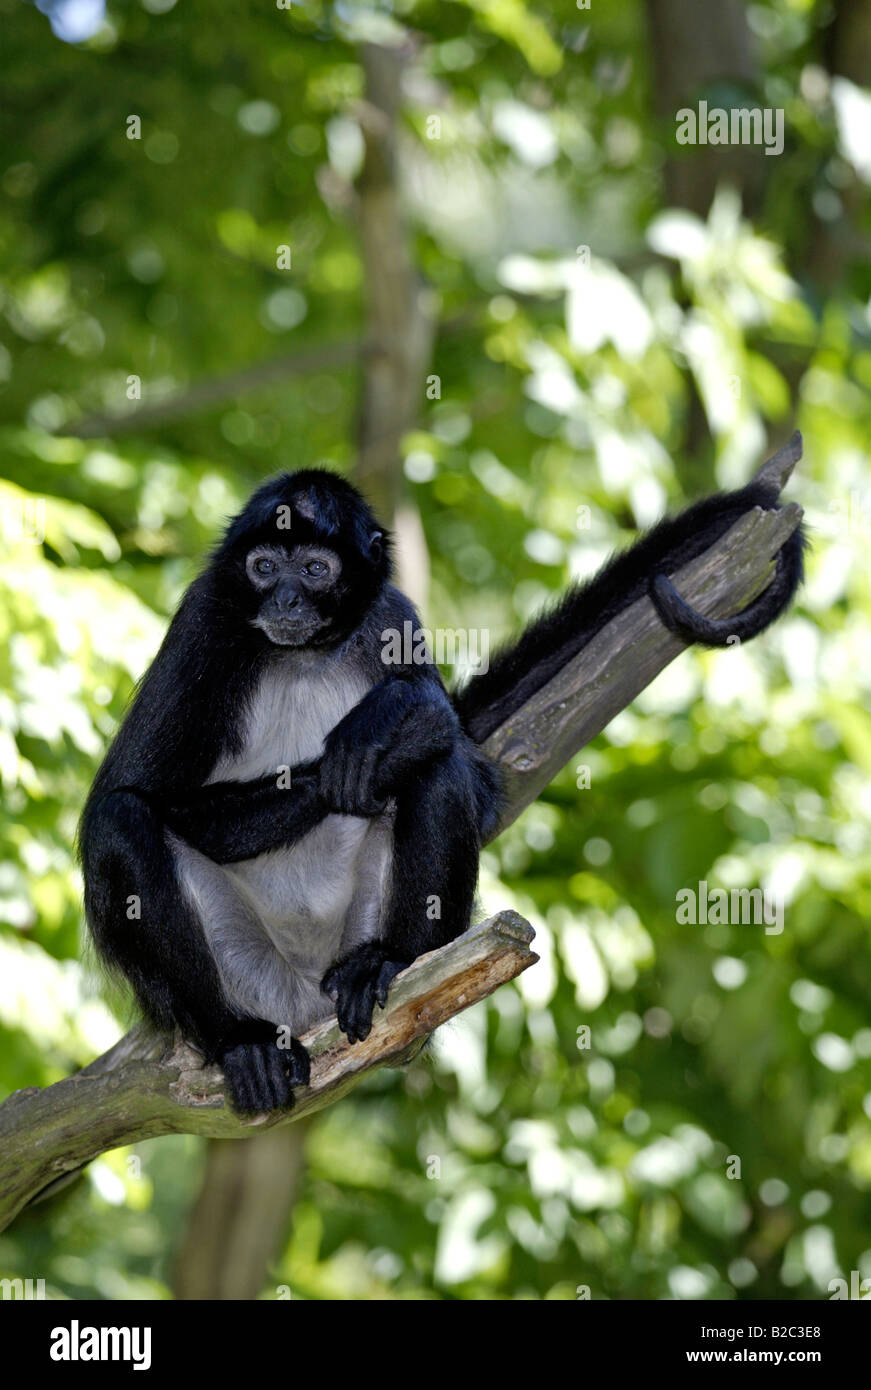 Geoffroy maduros o mano negra mono araña (Ateles geoffroyi) sentado en una rama, Roatán, Honduras, América Central Foto de stock